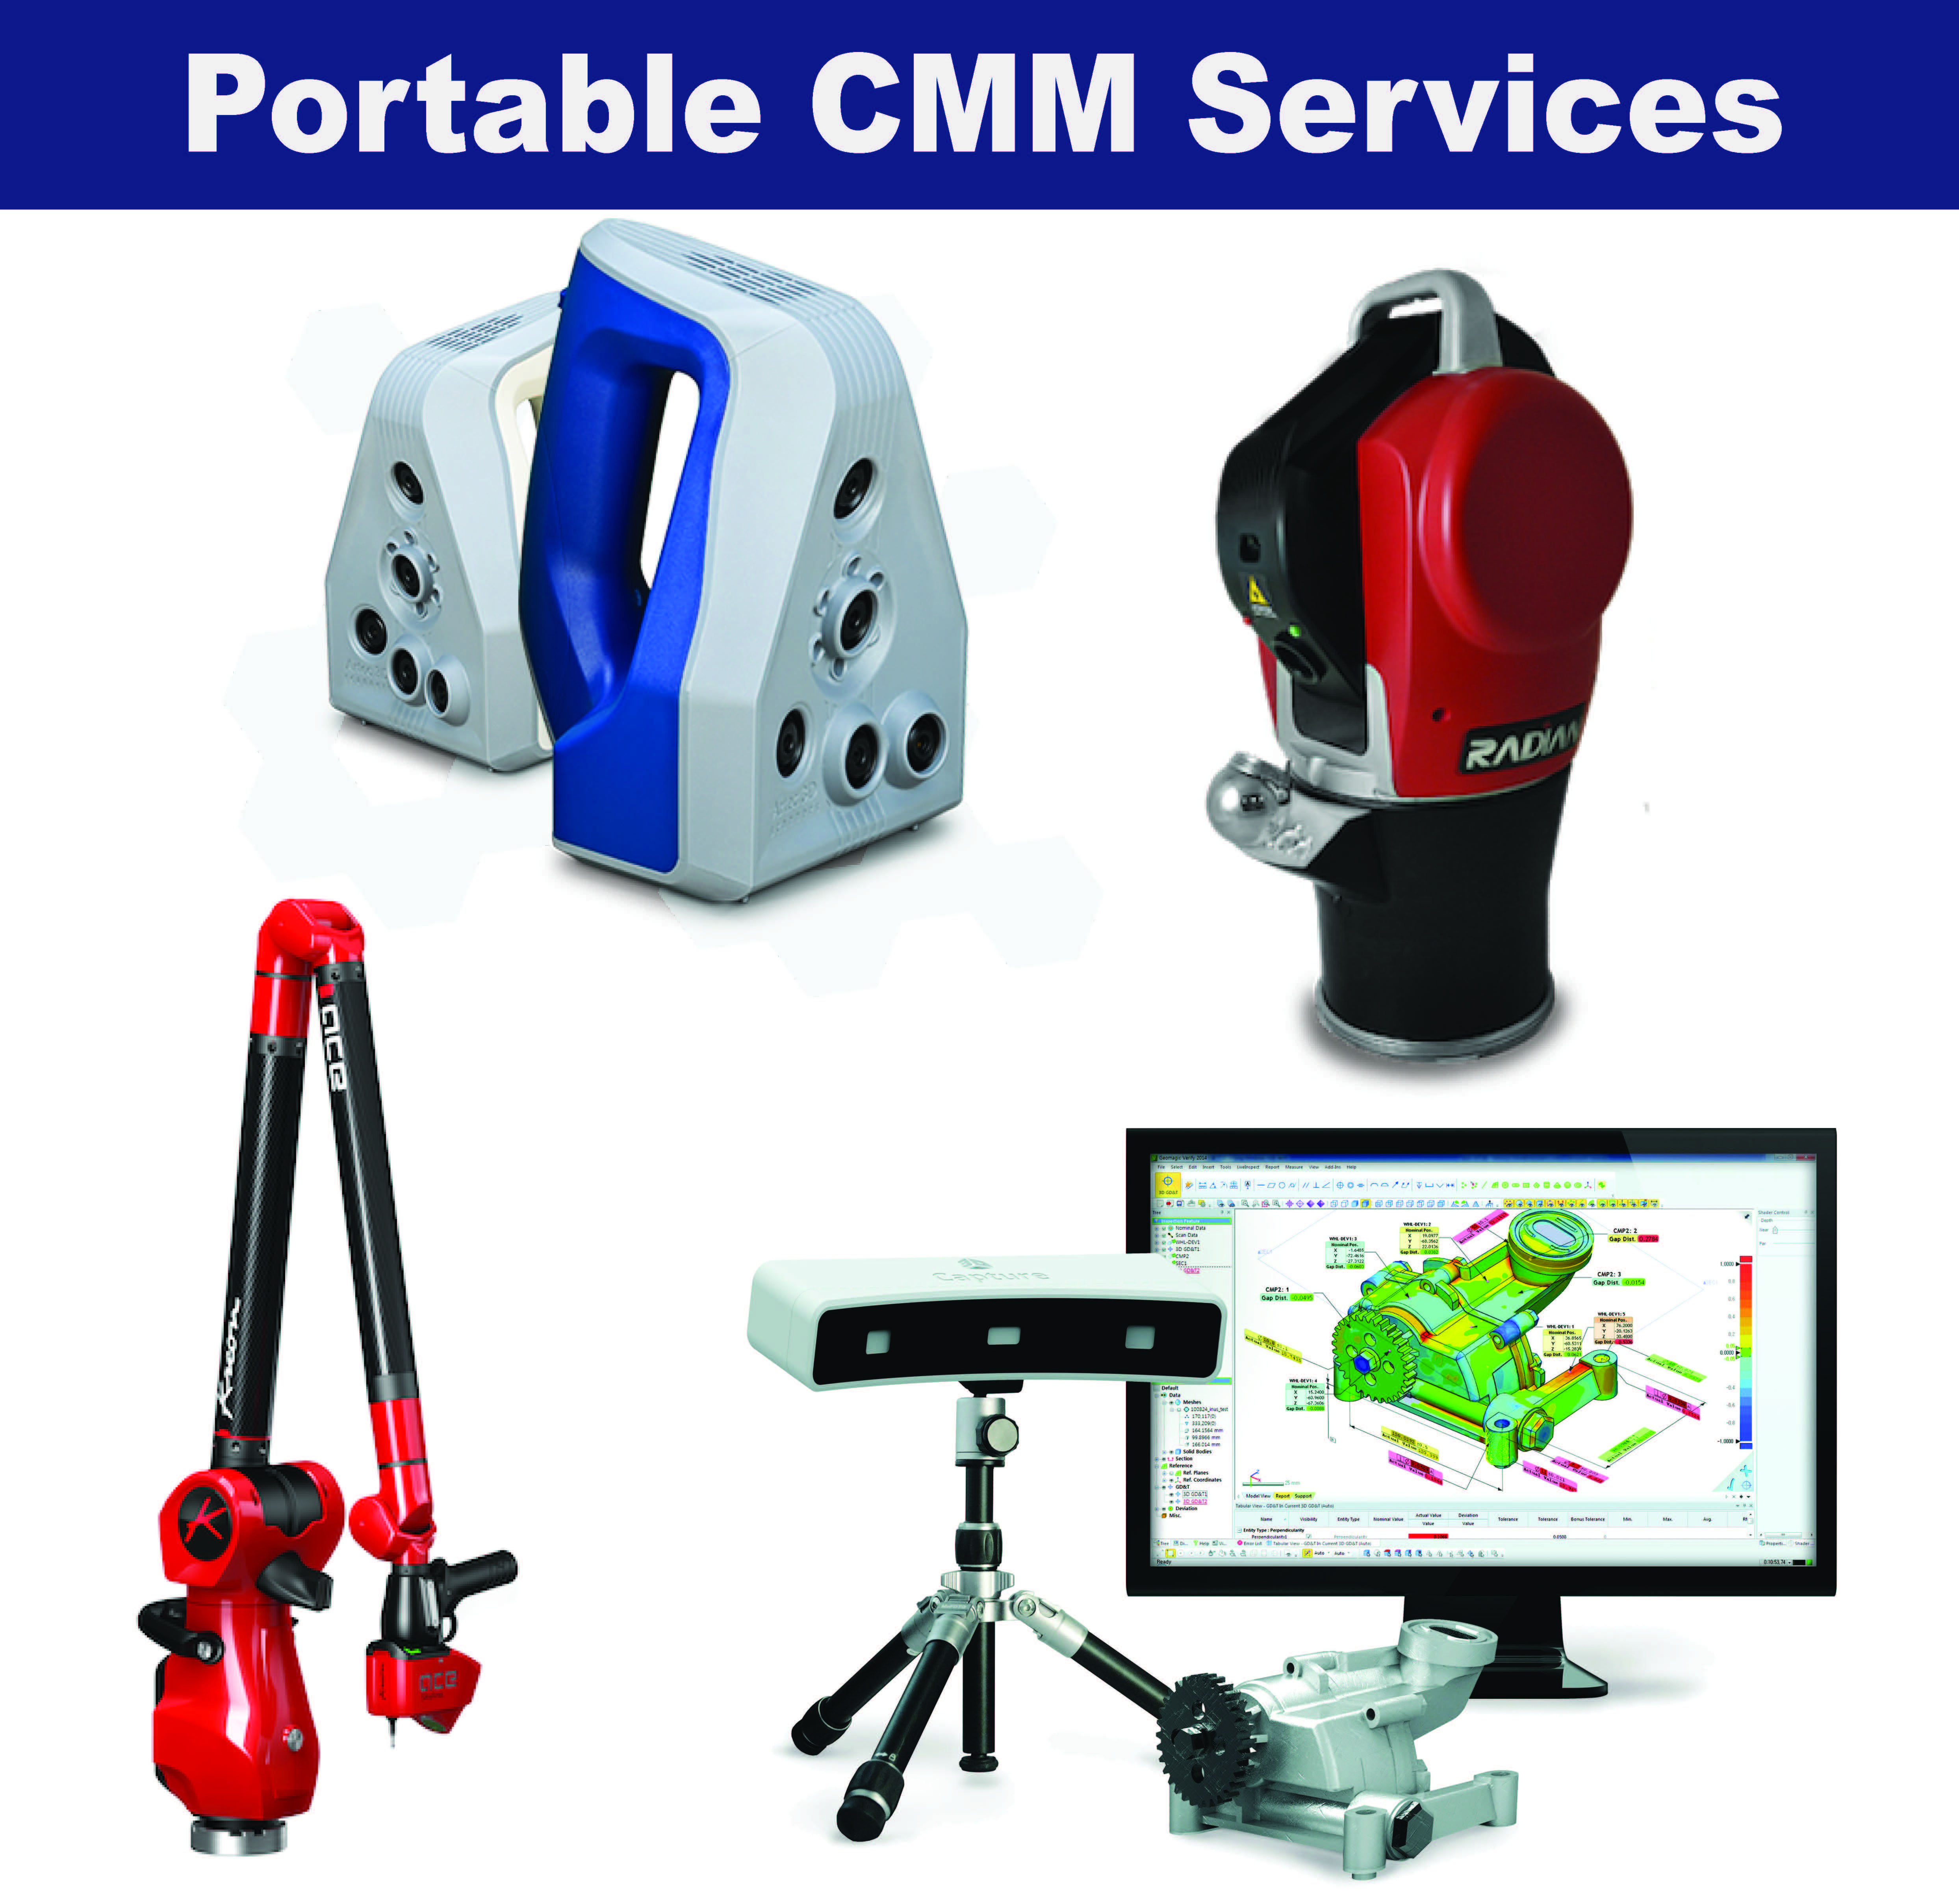 Portable CMM Services